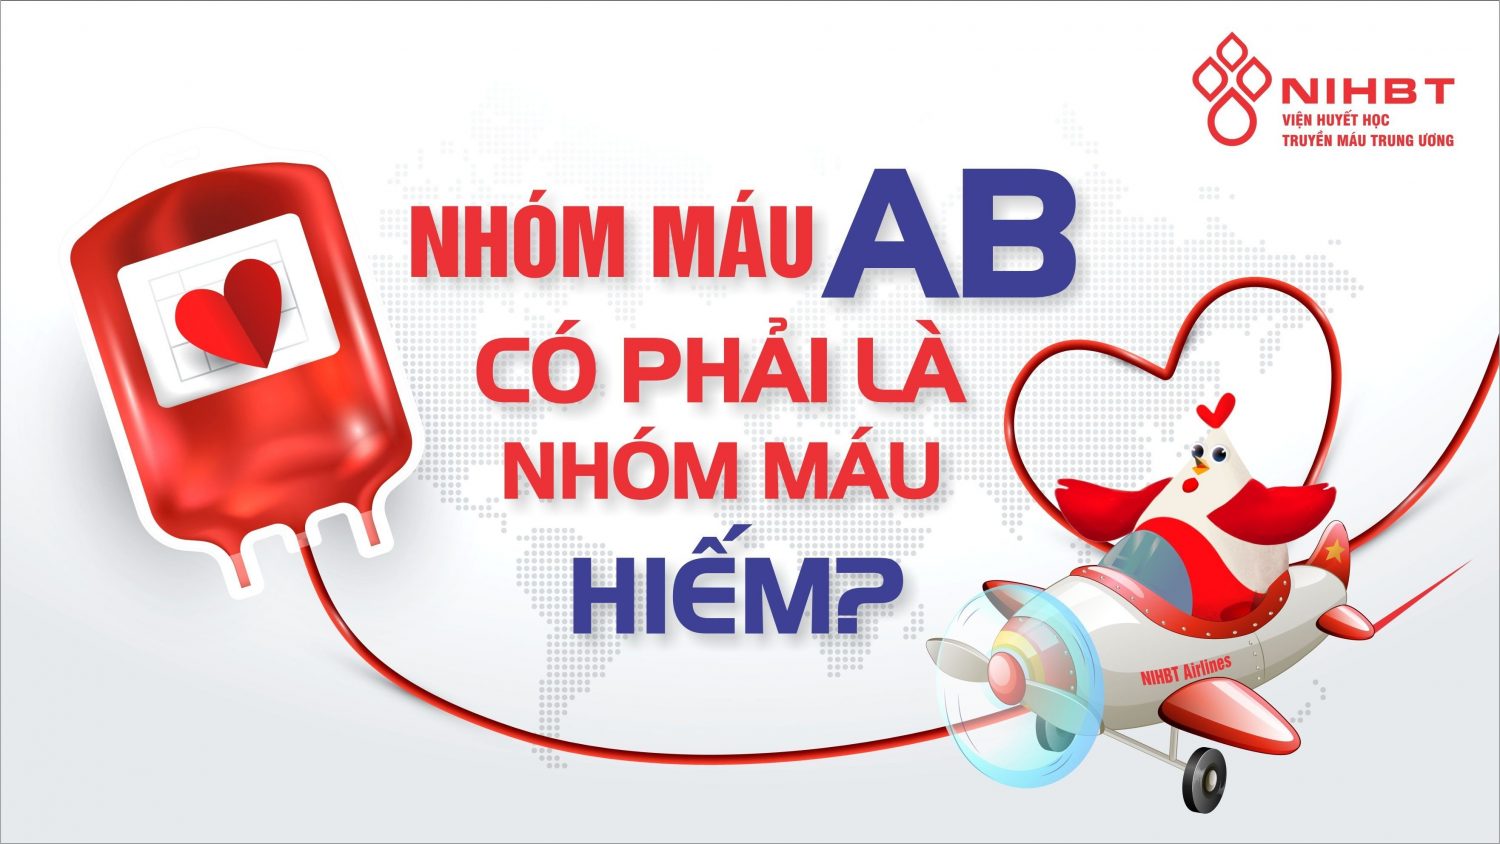 Nhóm máu Rh- chiếm tỷ lệ bao nhiêu trong dân số Việt Nam?
